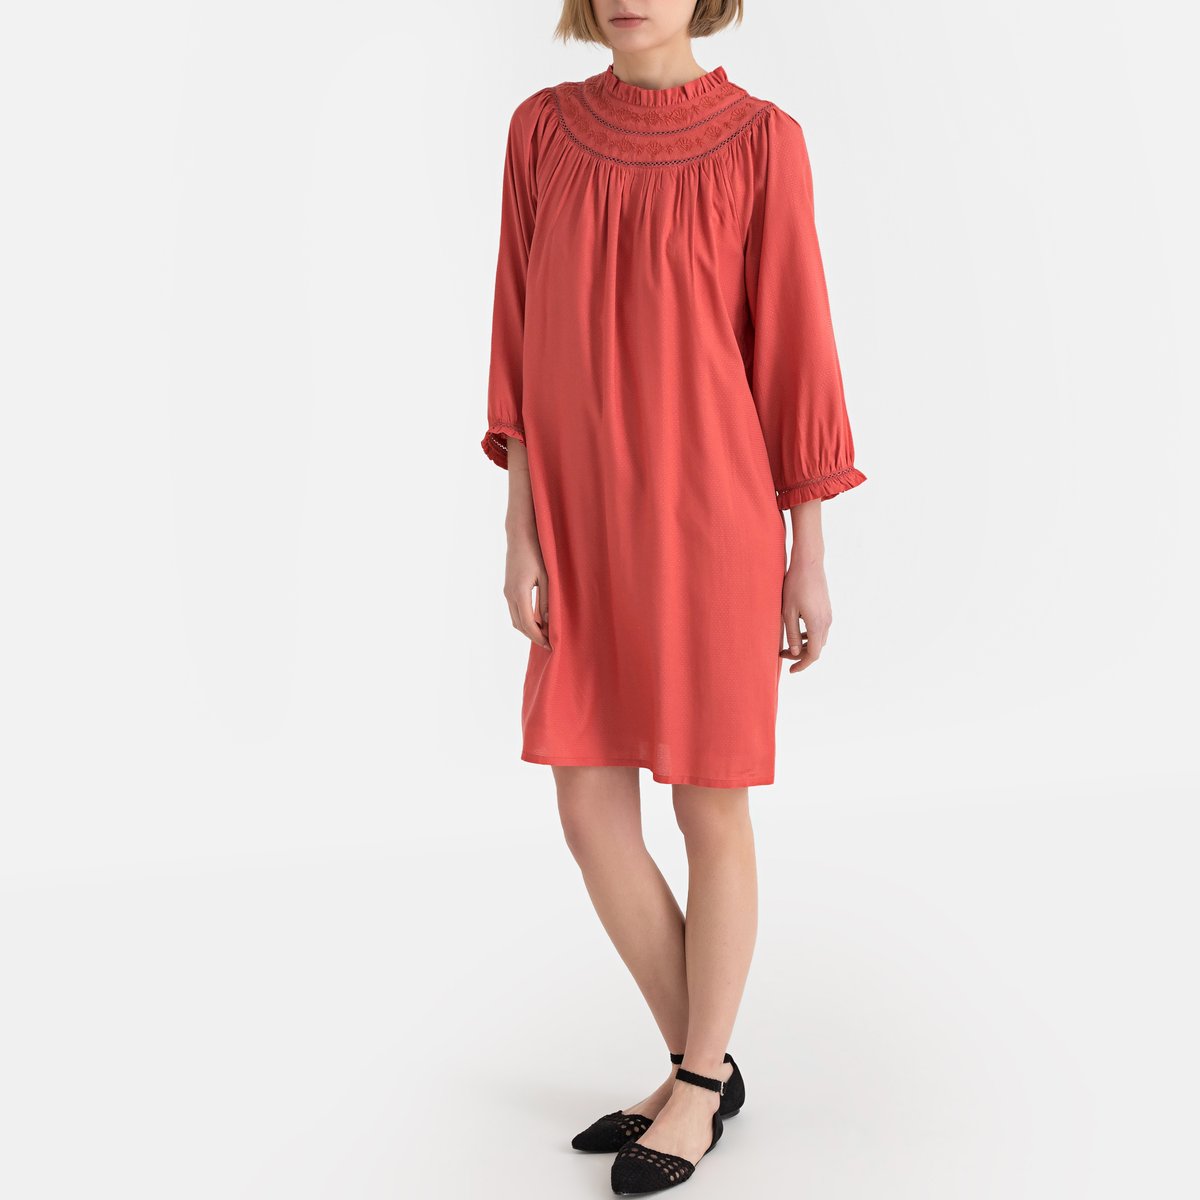 Платье La Redoute Расклешенное с длинными рукавами 36 (FR) - 42 (RUS) розовый, размер 36 (FR) - 42 (RUS) Расклешенное с длинными рукавами 36 (FR) - 42 (RUS) розовый - фото 2